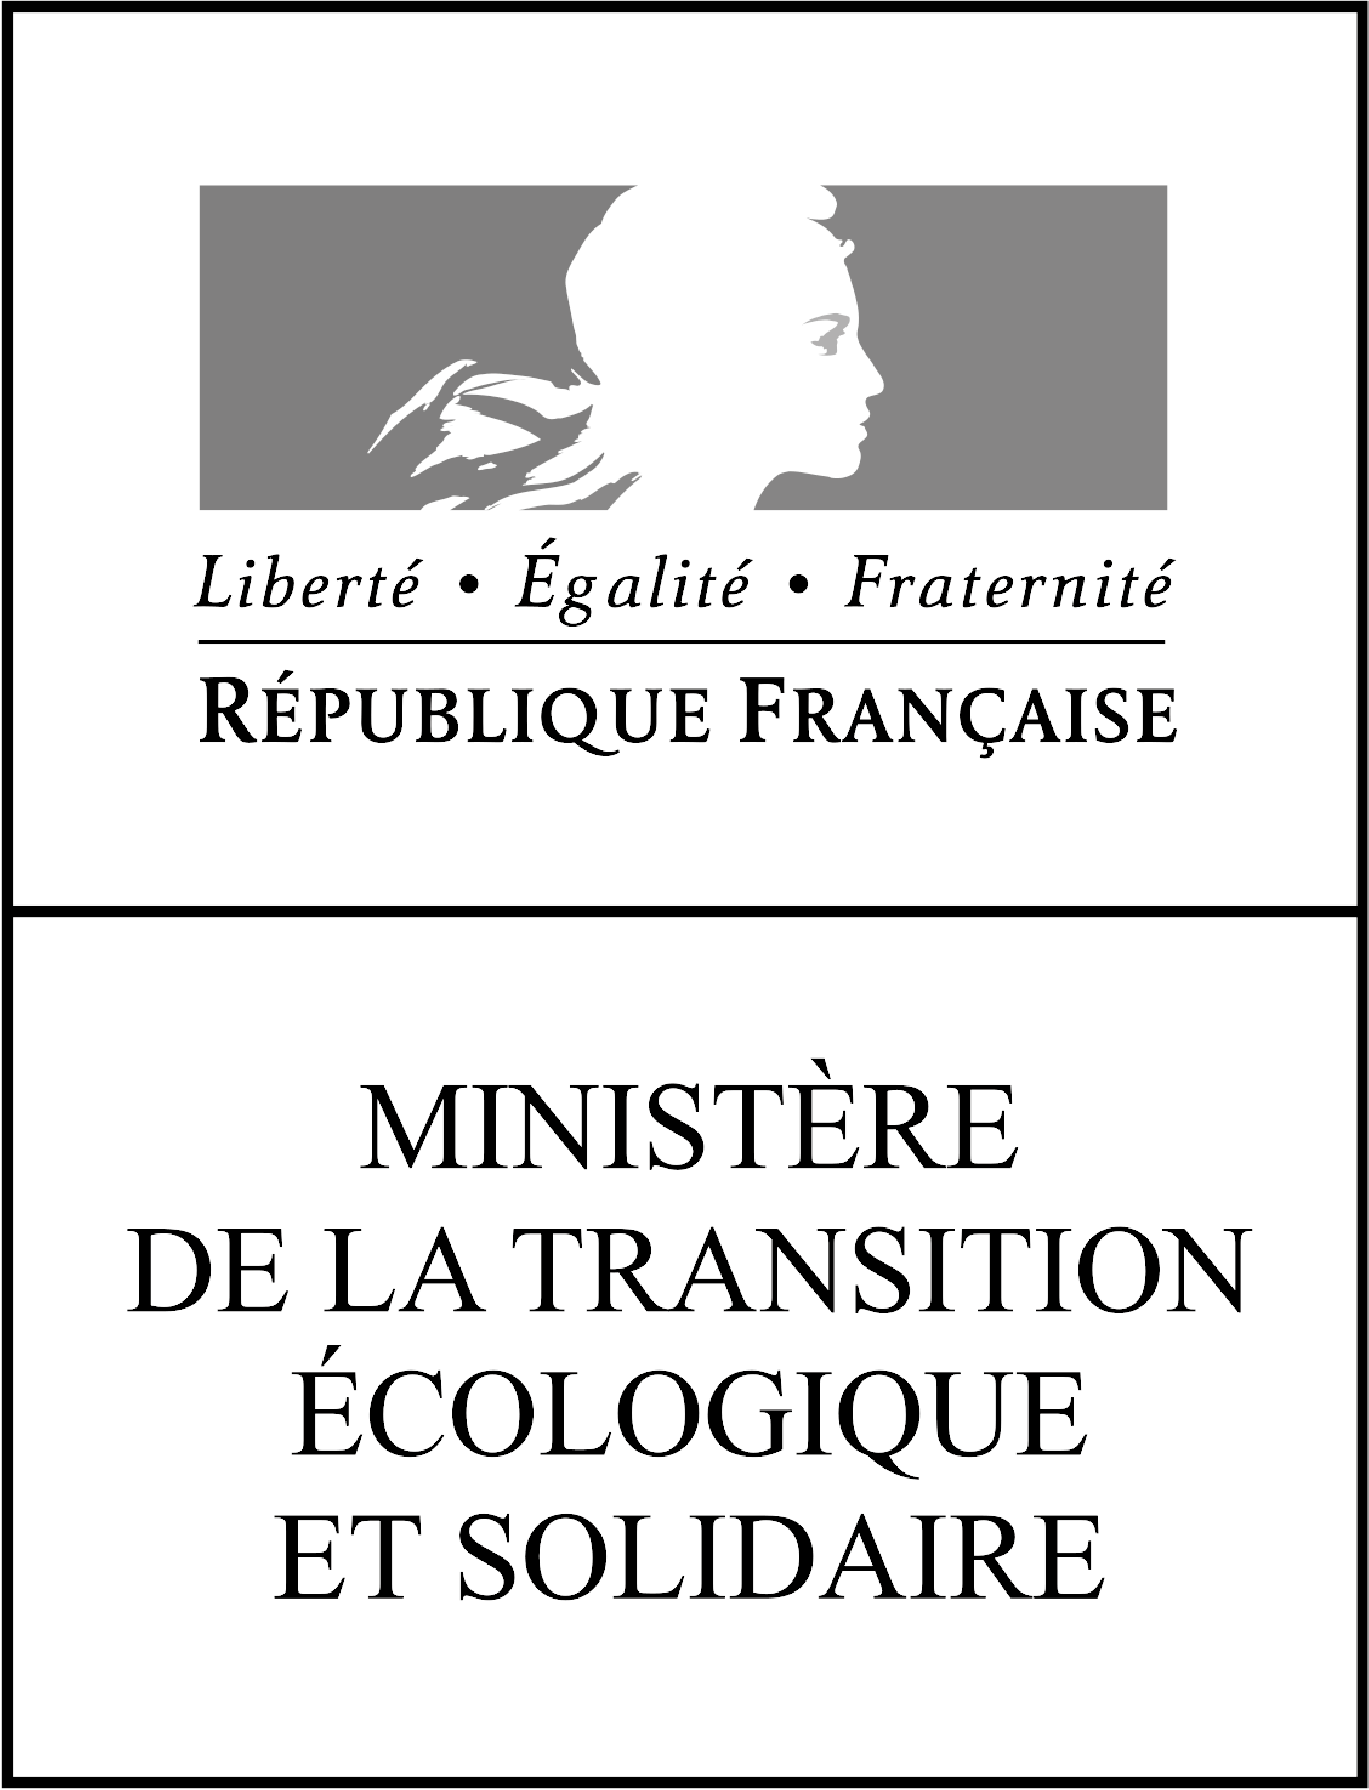 Logo Ministère de la transition écologique et solidaire